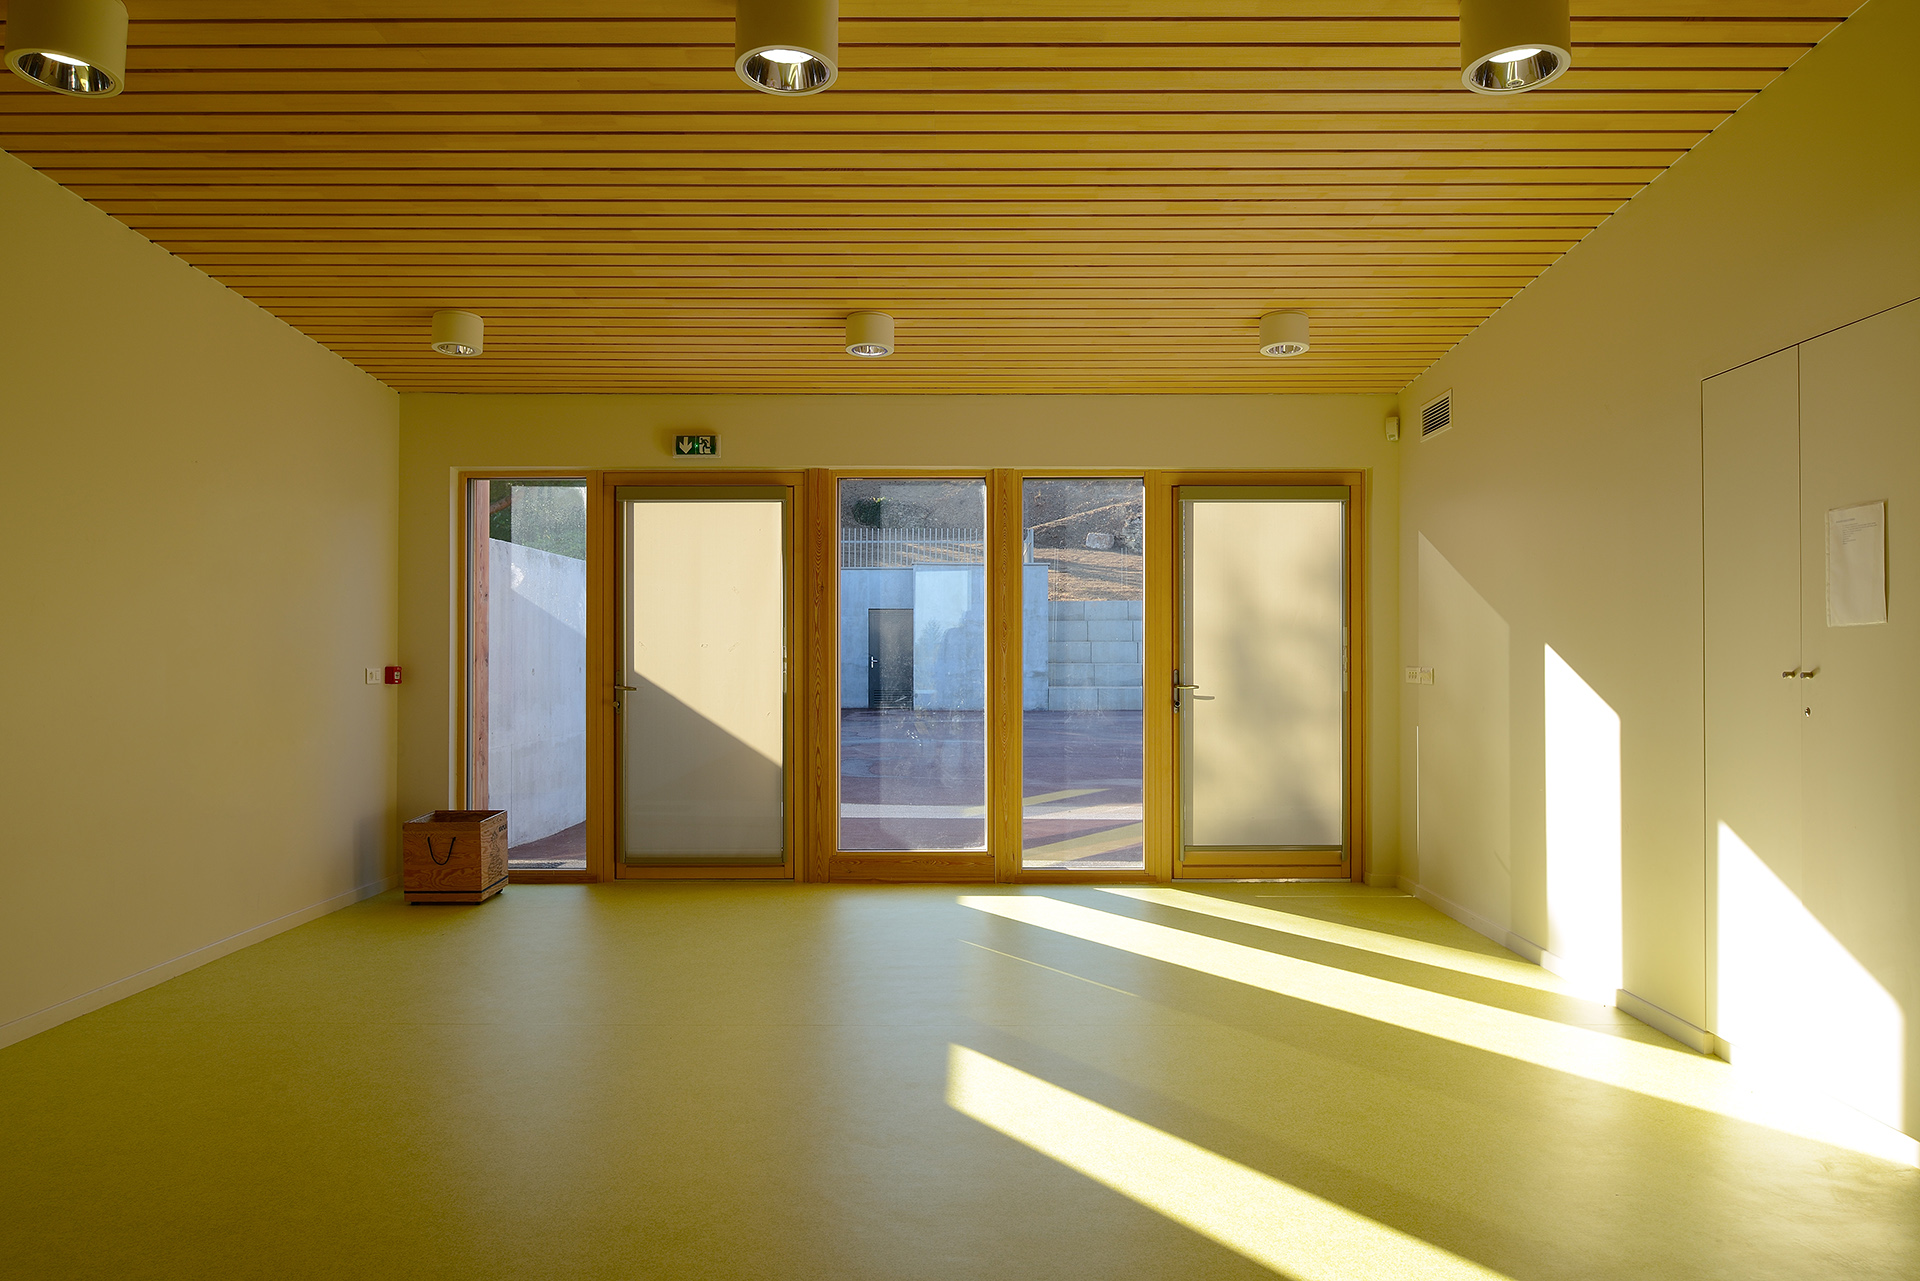 Salle associative Anse (Atelier Régis Gachon Architecte)